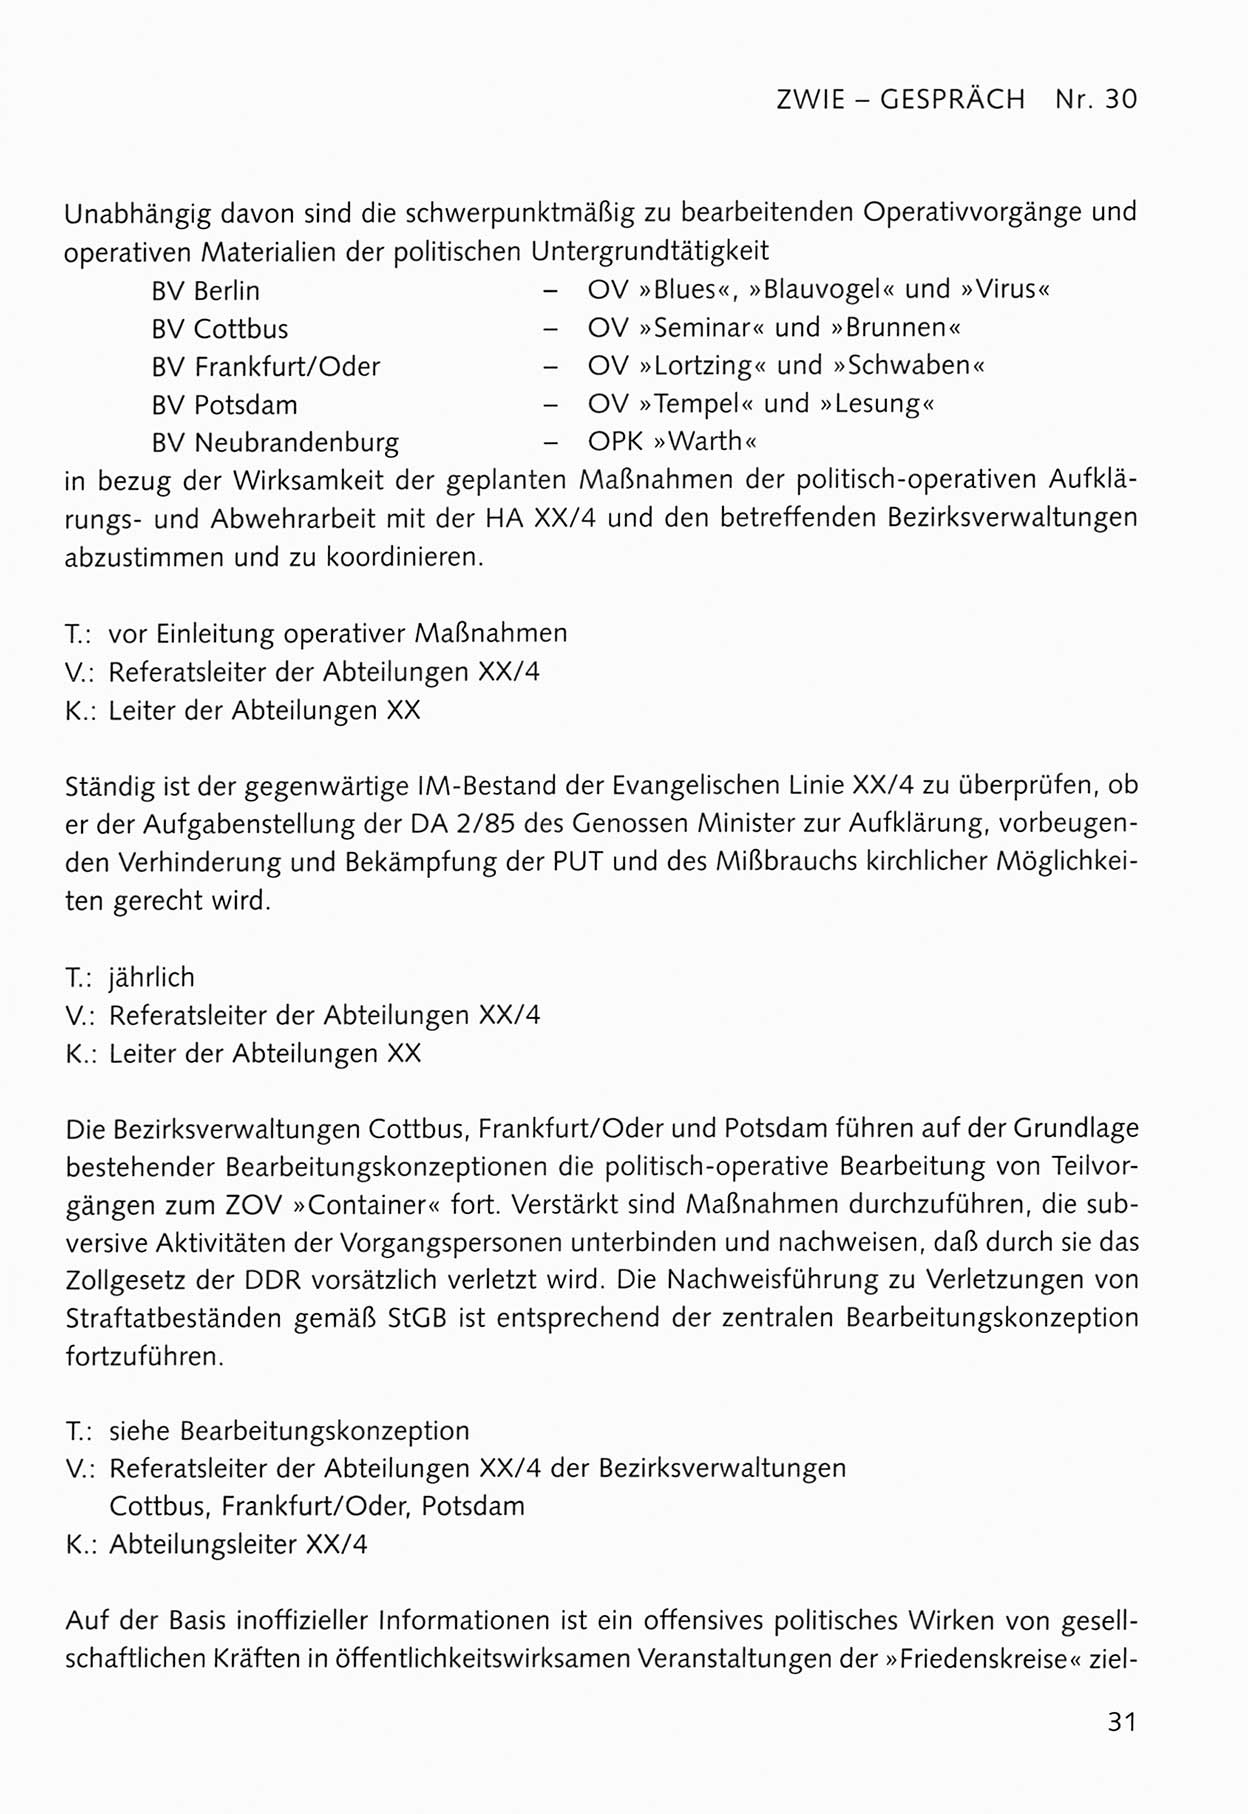 Zwie-Gespräch, Beiträge zum Umgang mit der Staatssicherheits-Vergangenheit [Deutsche Demokratische Republik (DDR)], Ausgabe Nr. 30, Berlin 1995, Seite 31 (Zwie-Gespr. Ausg. 30 1995, S. 31)